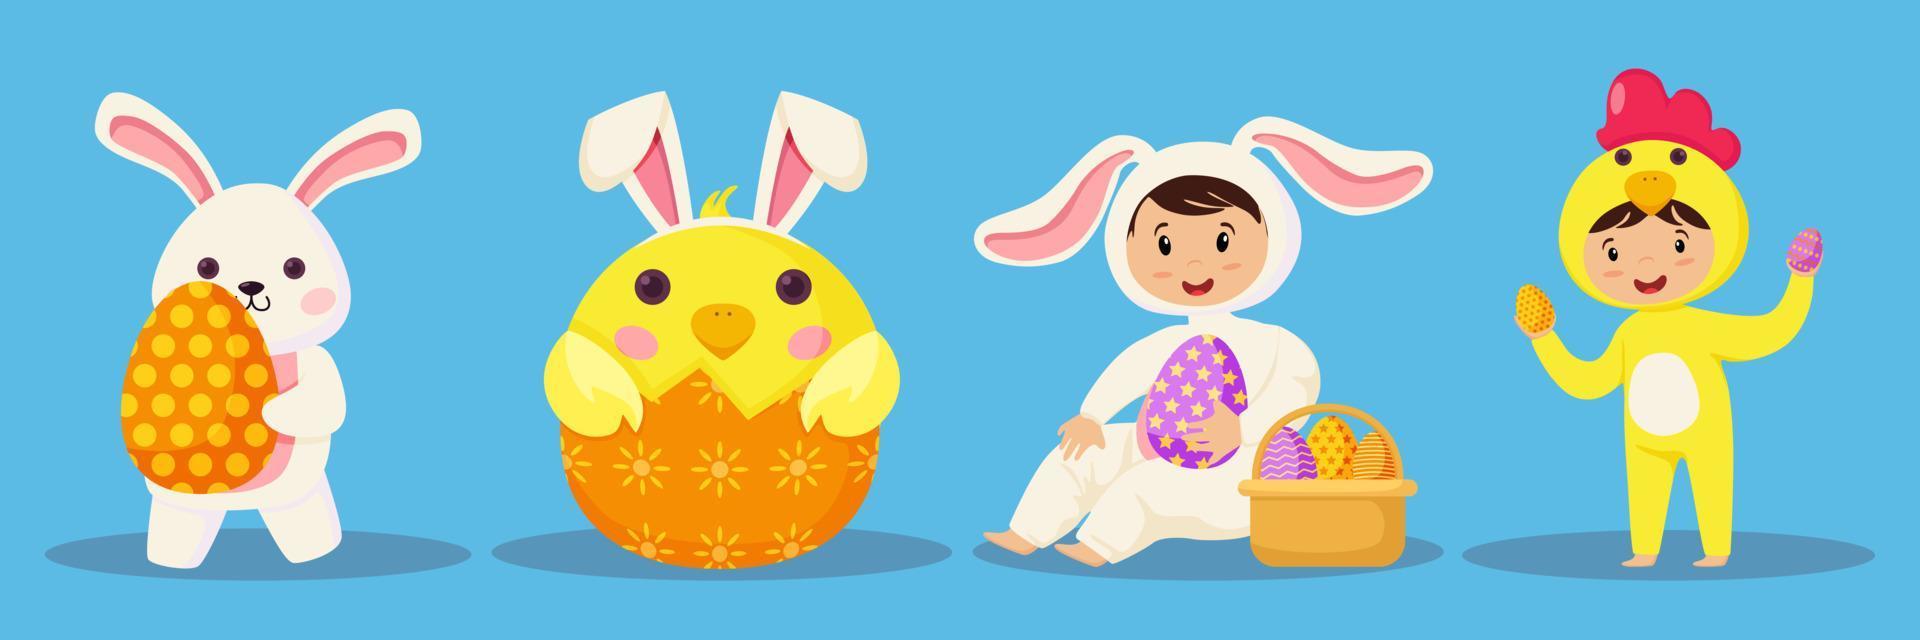 contento Pascua de Resurrección linda dibujos animados personaje vector colocar. festival y cultural fiesta concepto.